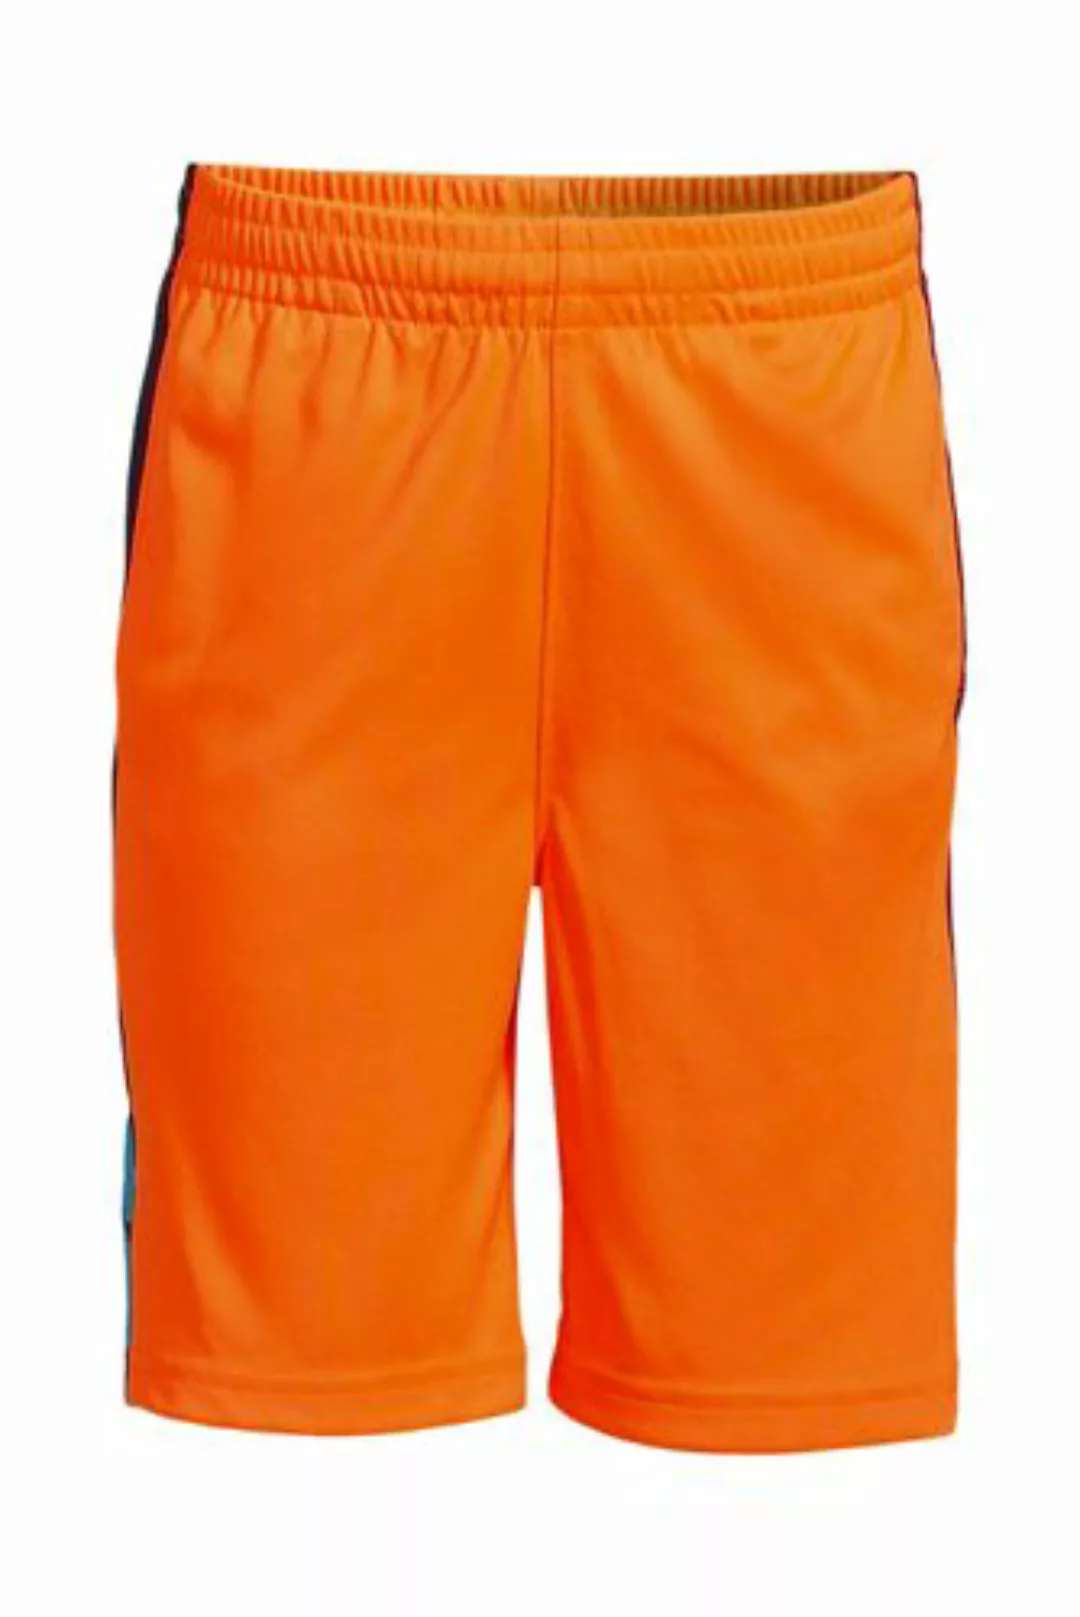 Performance-Shorts, Größe: 134-152, Orange, Polyester, by Lands' End, Shock günstig online kaufen